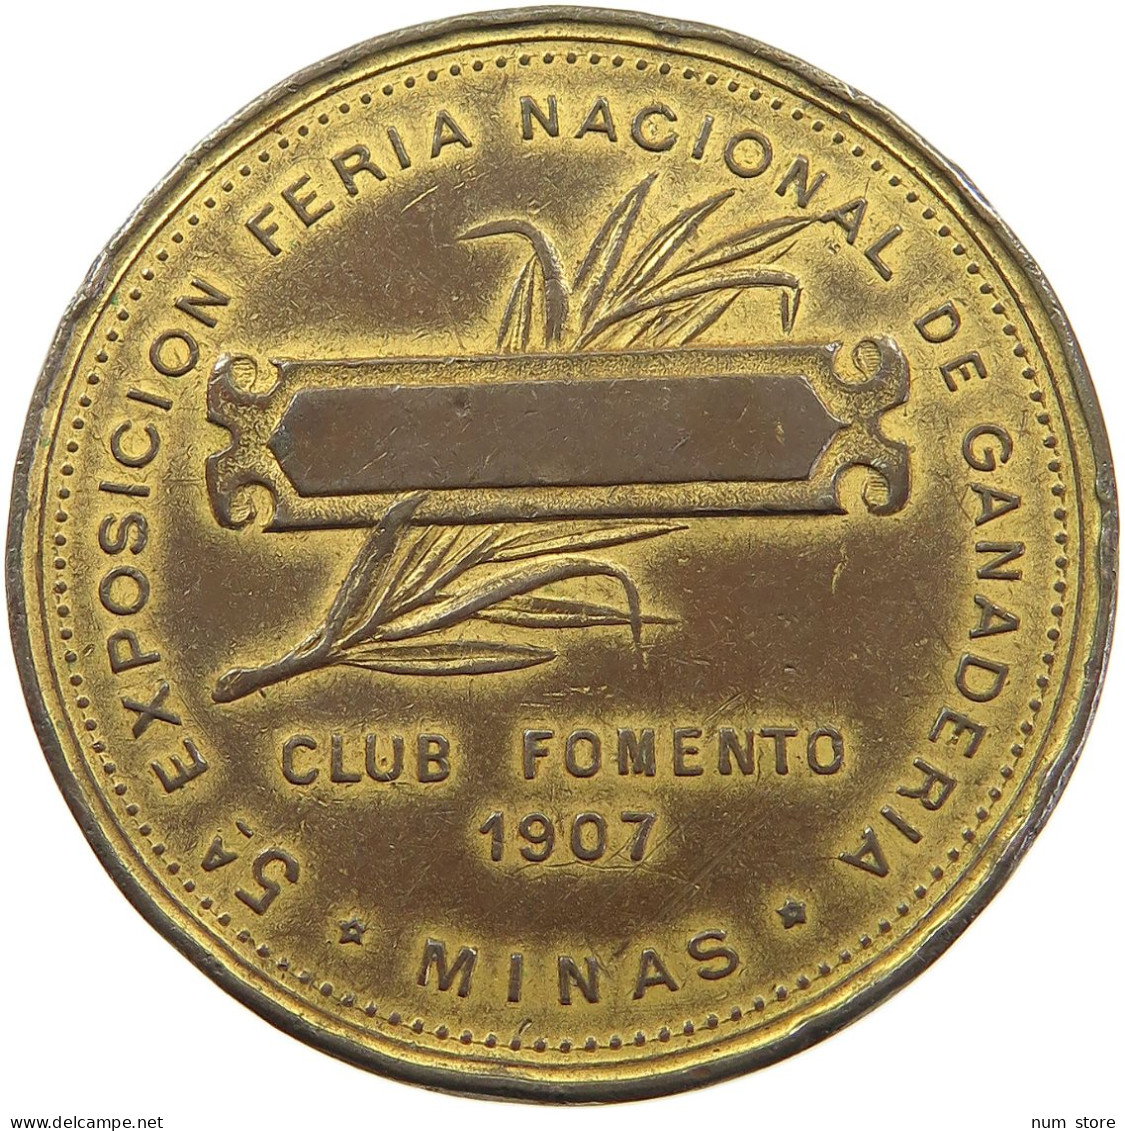 URUGUAY MEDAL 1907 EXPOSICION FERIA NACIONAL GANADERIA TAMMARO MINAS CLUB FOMENTO #tm2 0267 - Uruguay